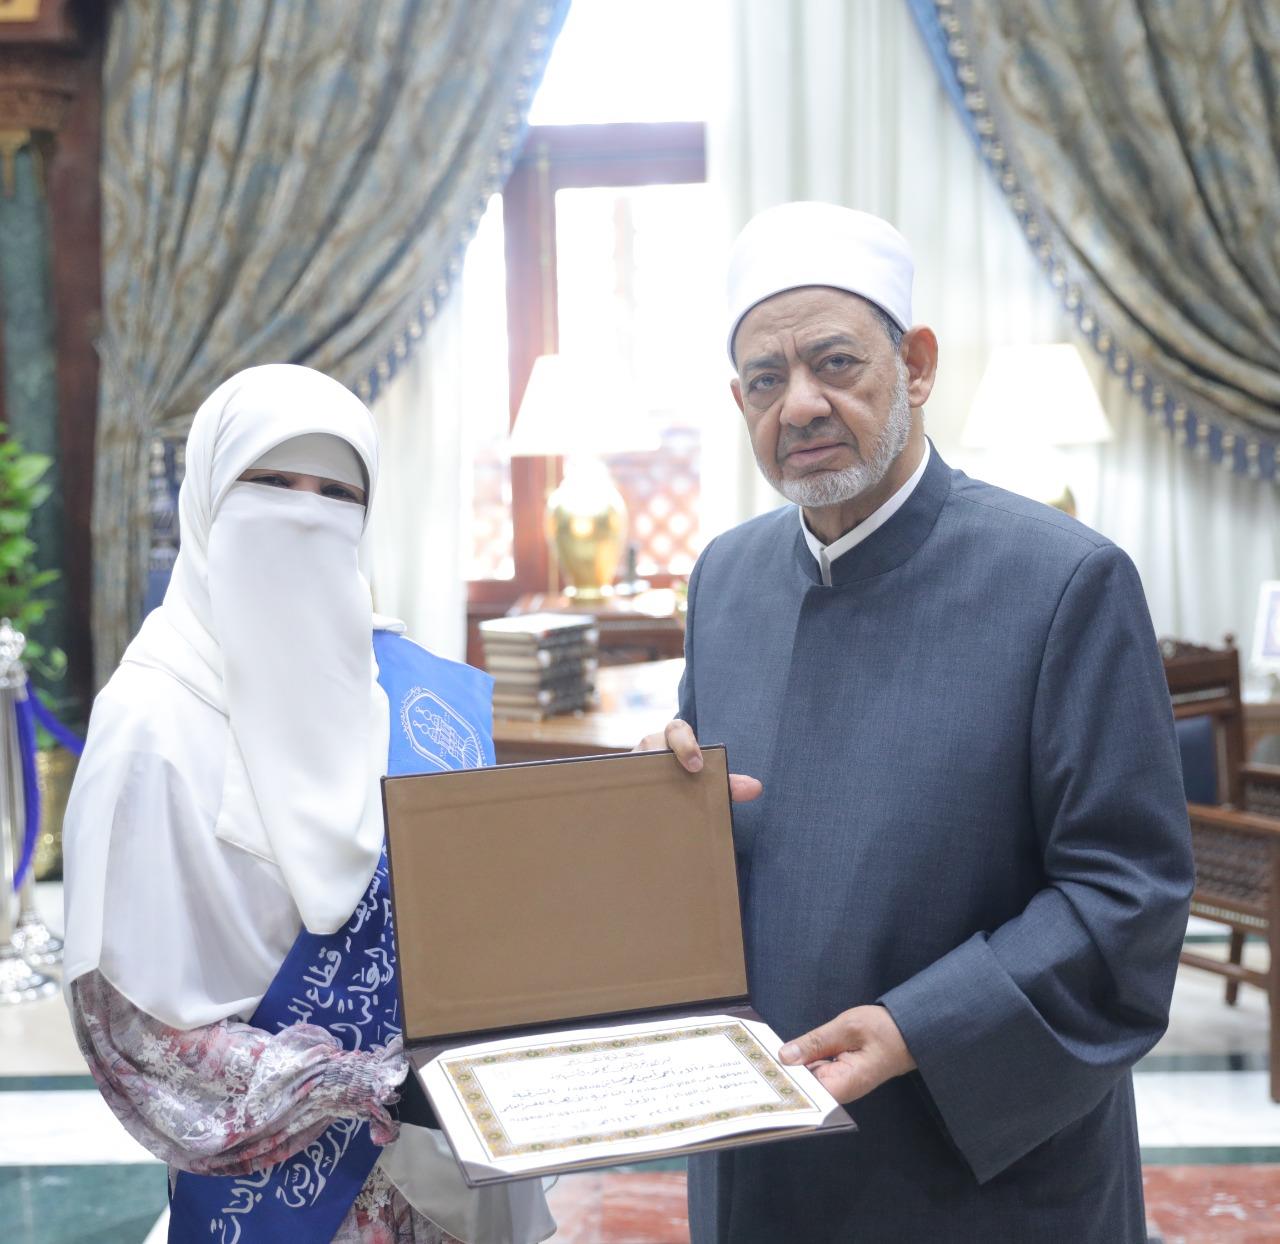 الإمام الأكبر يكرم أوائل الثانوية الأزهرية ويحرص على التقاط الصور التذكارية معهم